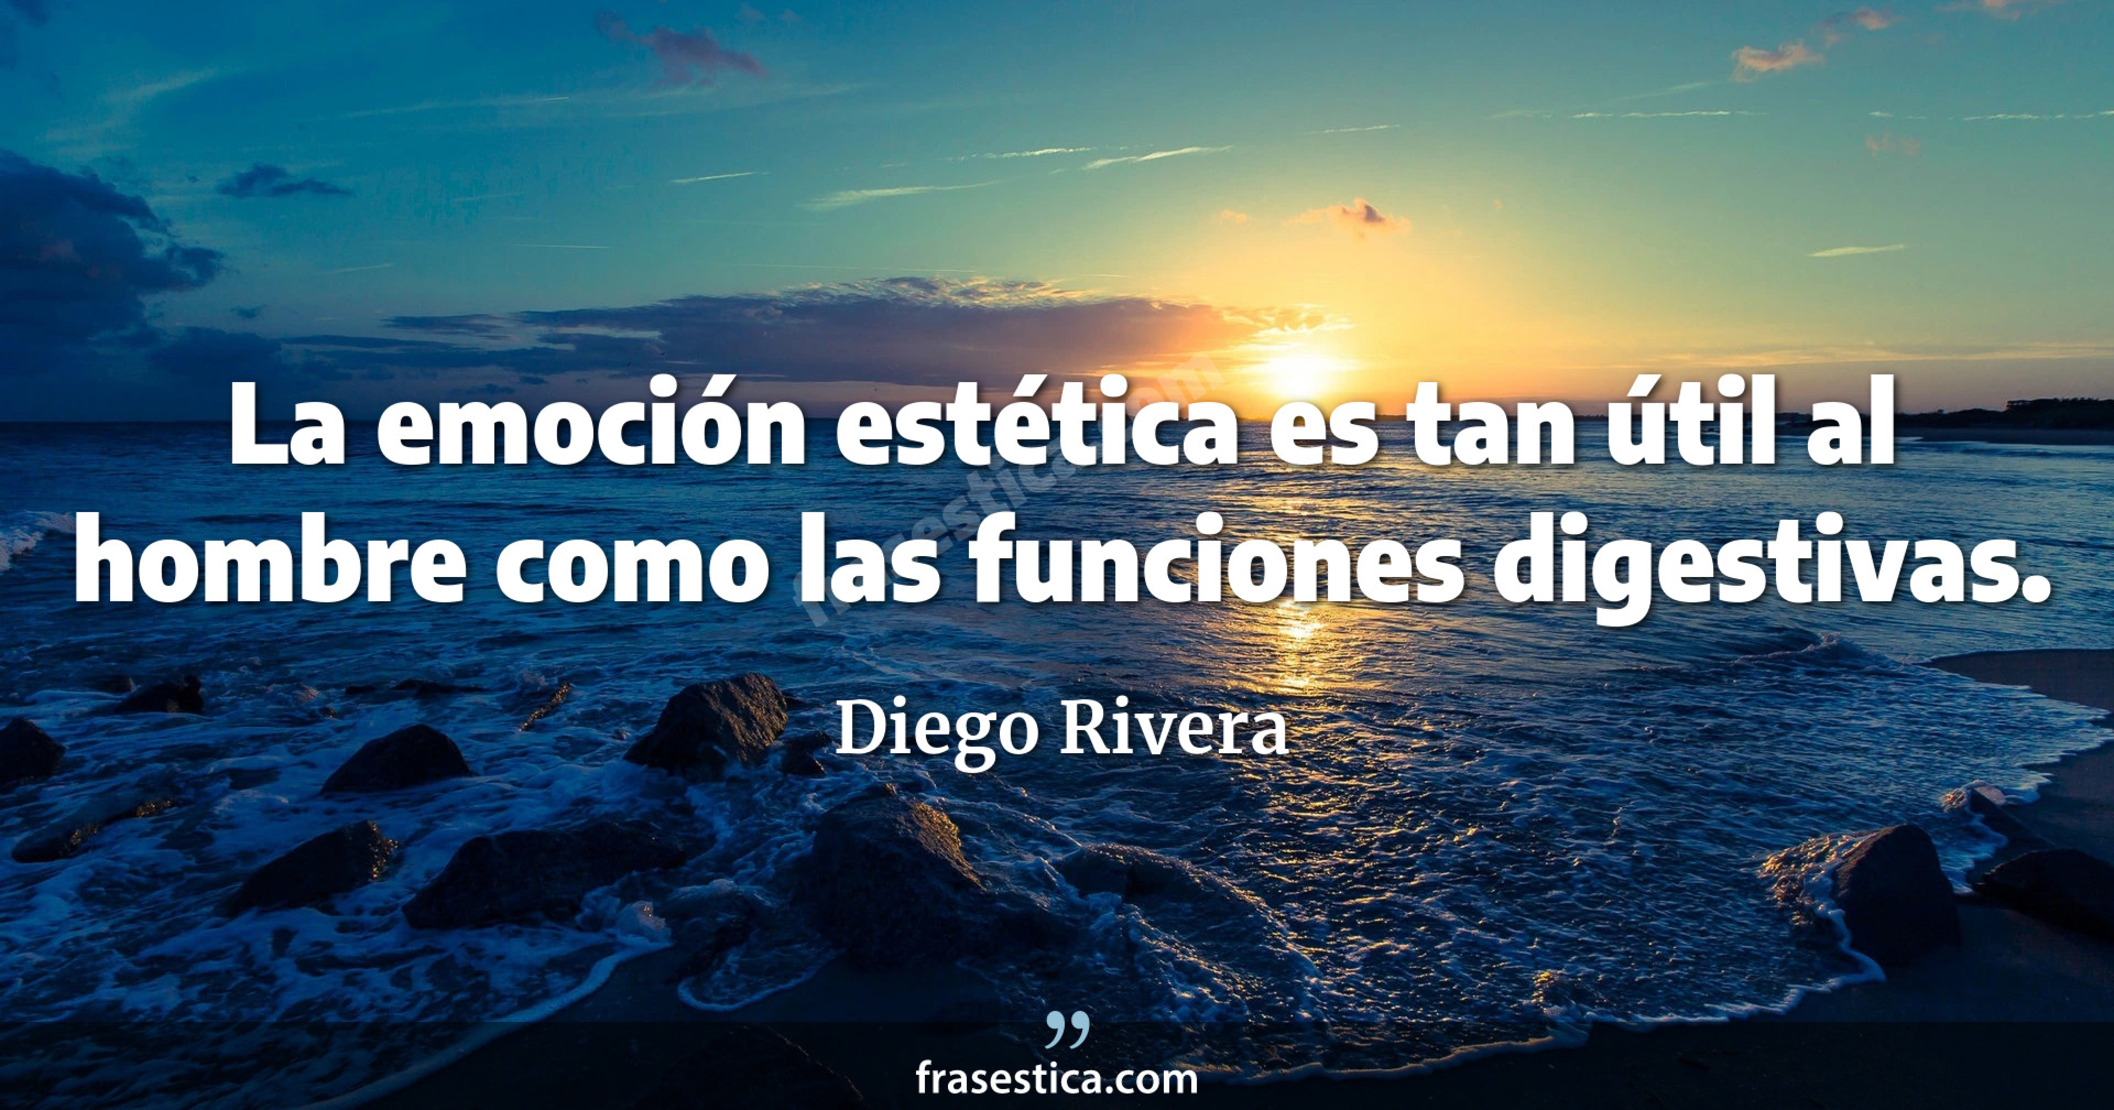 La emoción estética es tan útil al hombre como las funciones digestivas. - Diego Rivera